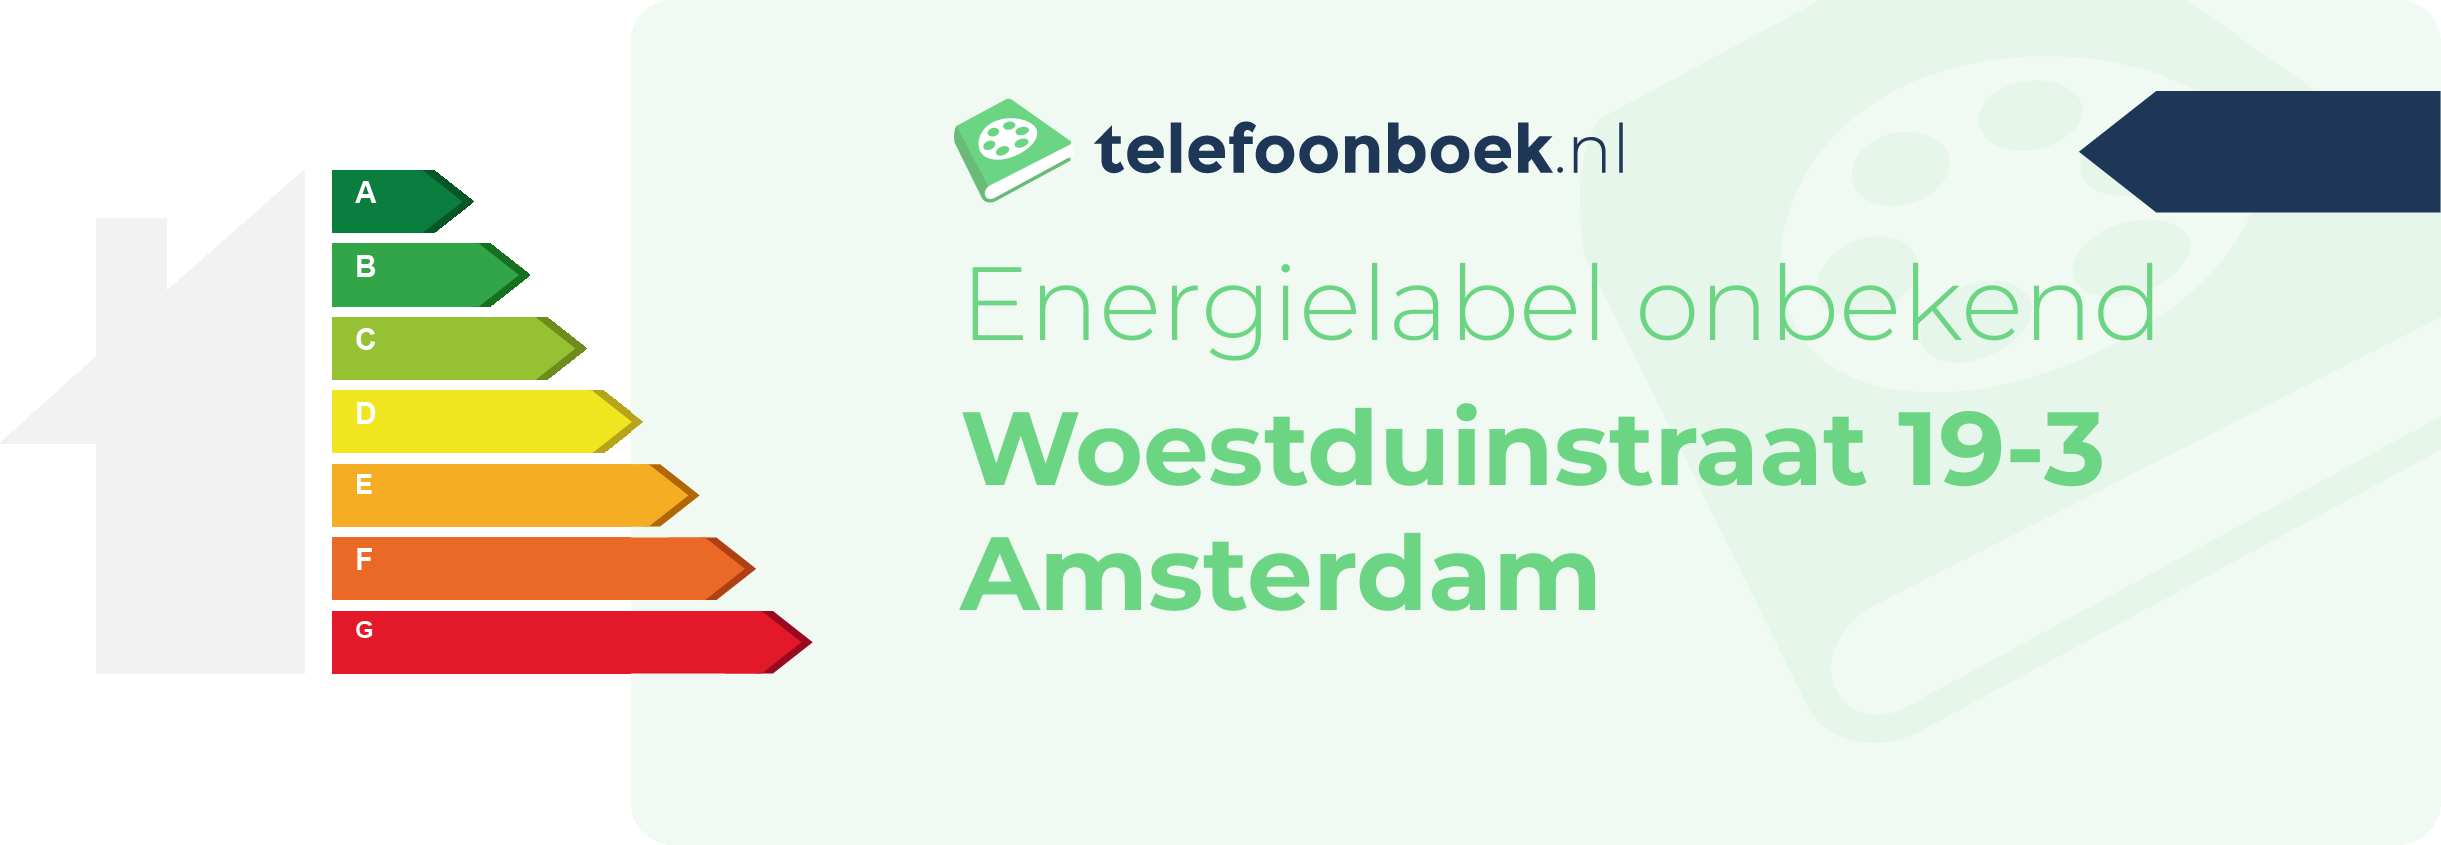 Energielabel Woestduinstraat 19-3 Amsterdam